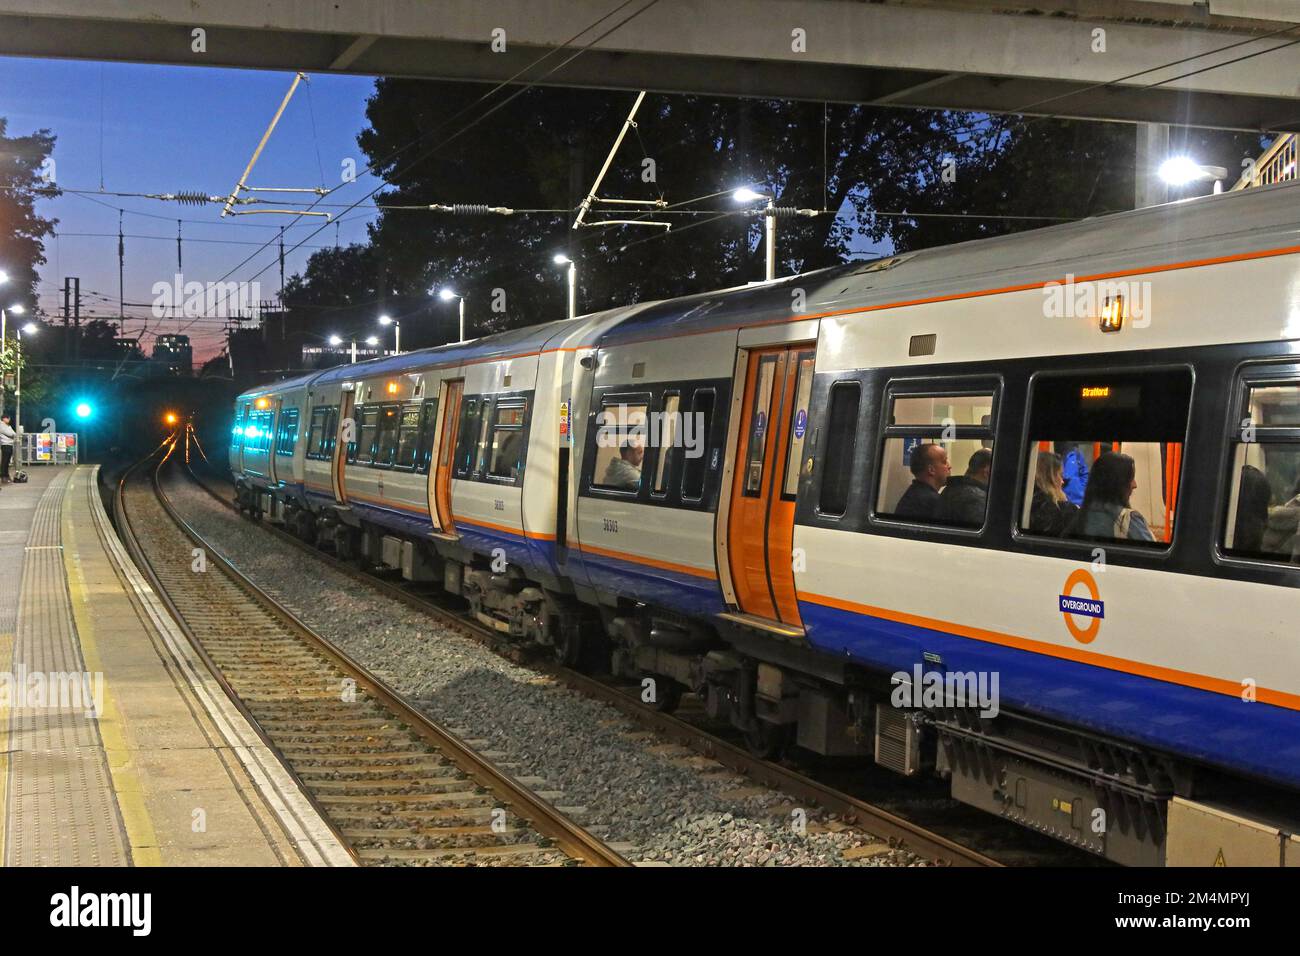 Stratford Bound, treno London Overground, alla stazione ferroviaria di Hackney Downs, Londra, Inghilterra, Regno Unito, E8 1LA Foto Stock